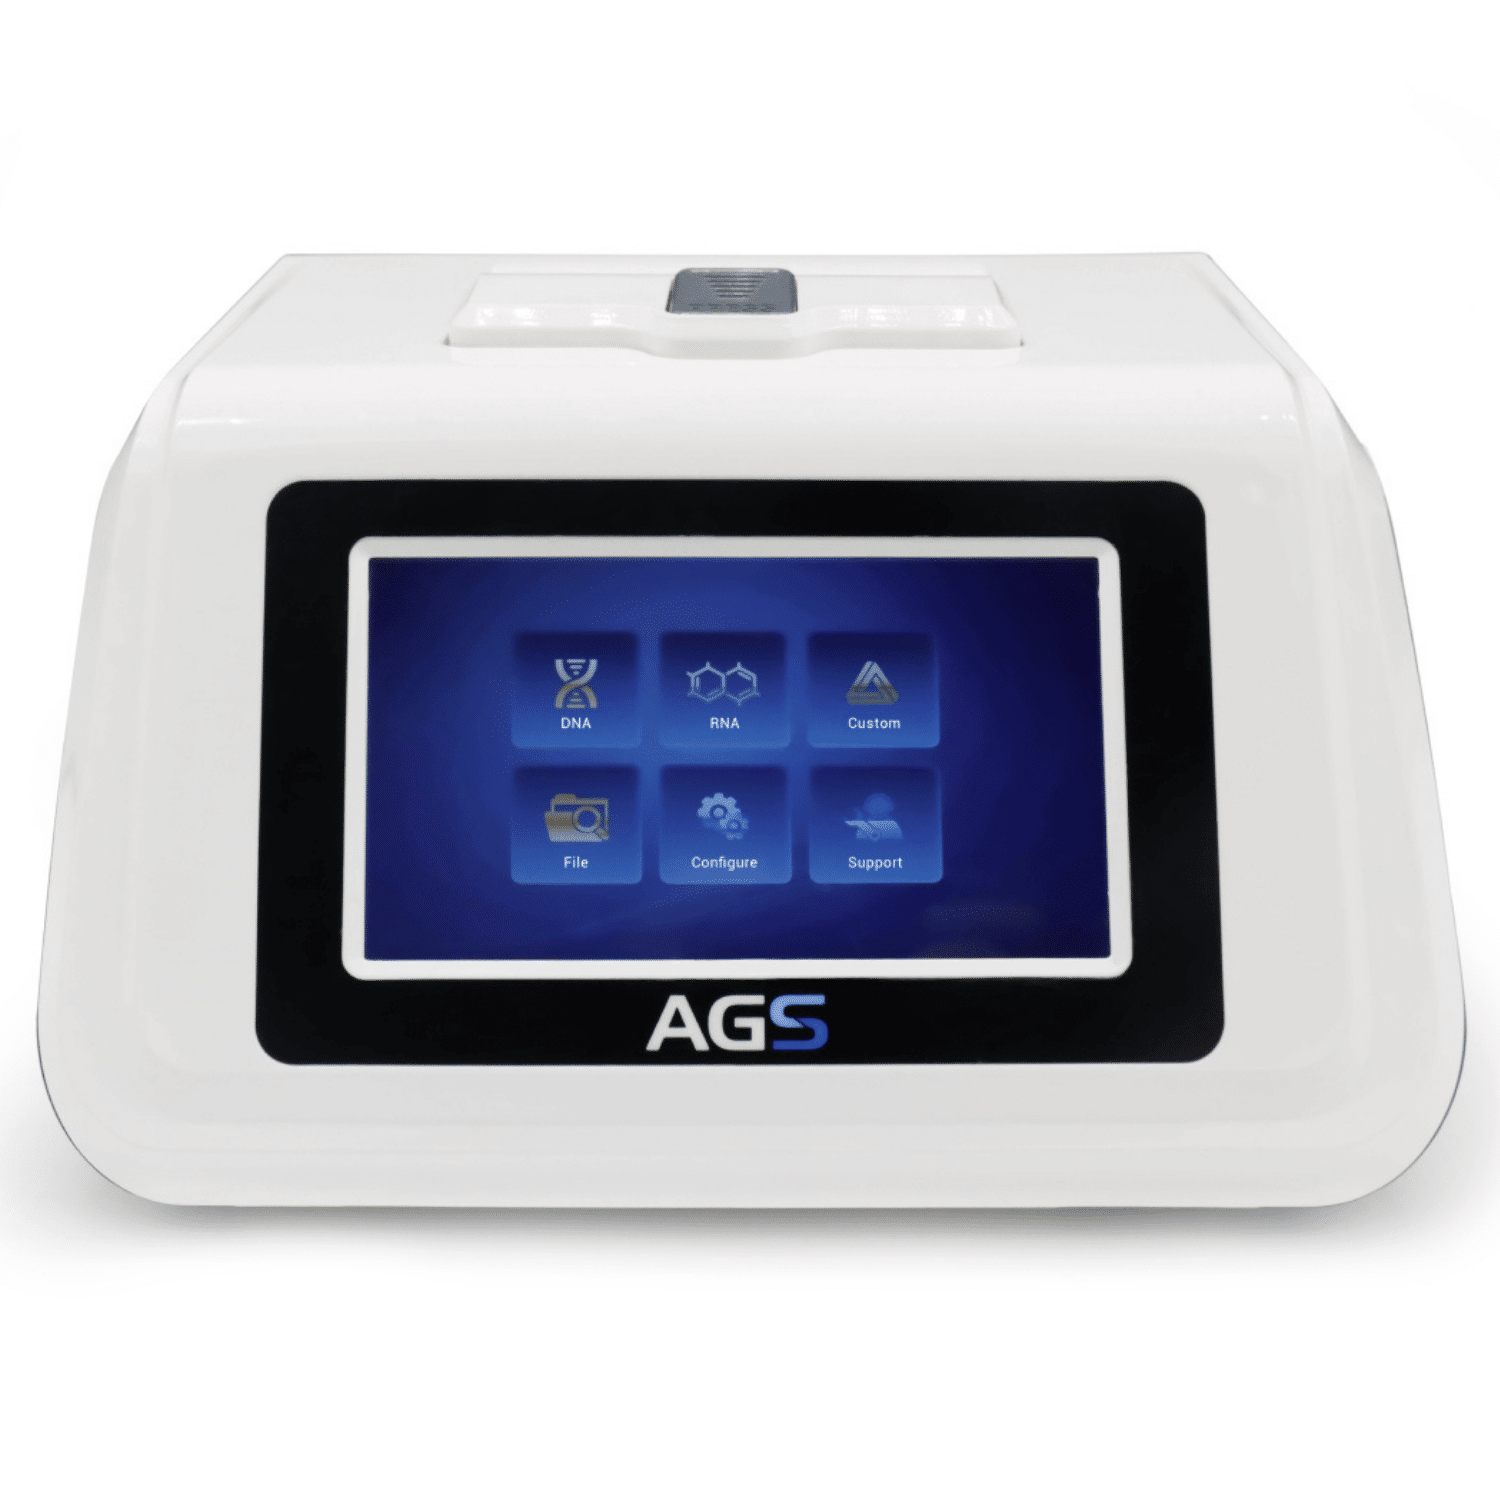 Ein PCR Pure Kit-Laborgerät der Marke Altruan mit einem großen digitalen Touchscreen mit Symbolen für DNA, RNA, Datei, Konfigurieren und Support auf dem Display, eingeschlossen in einem weißen Gehäuse.